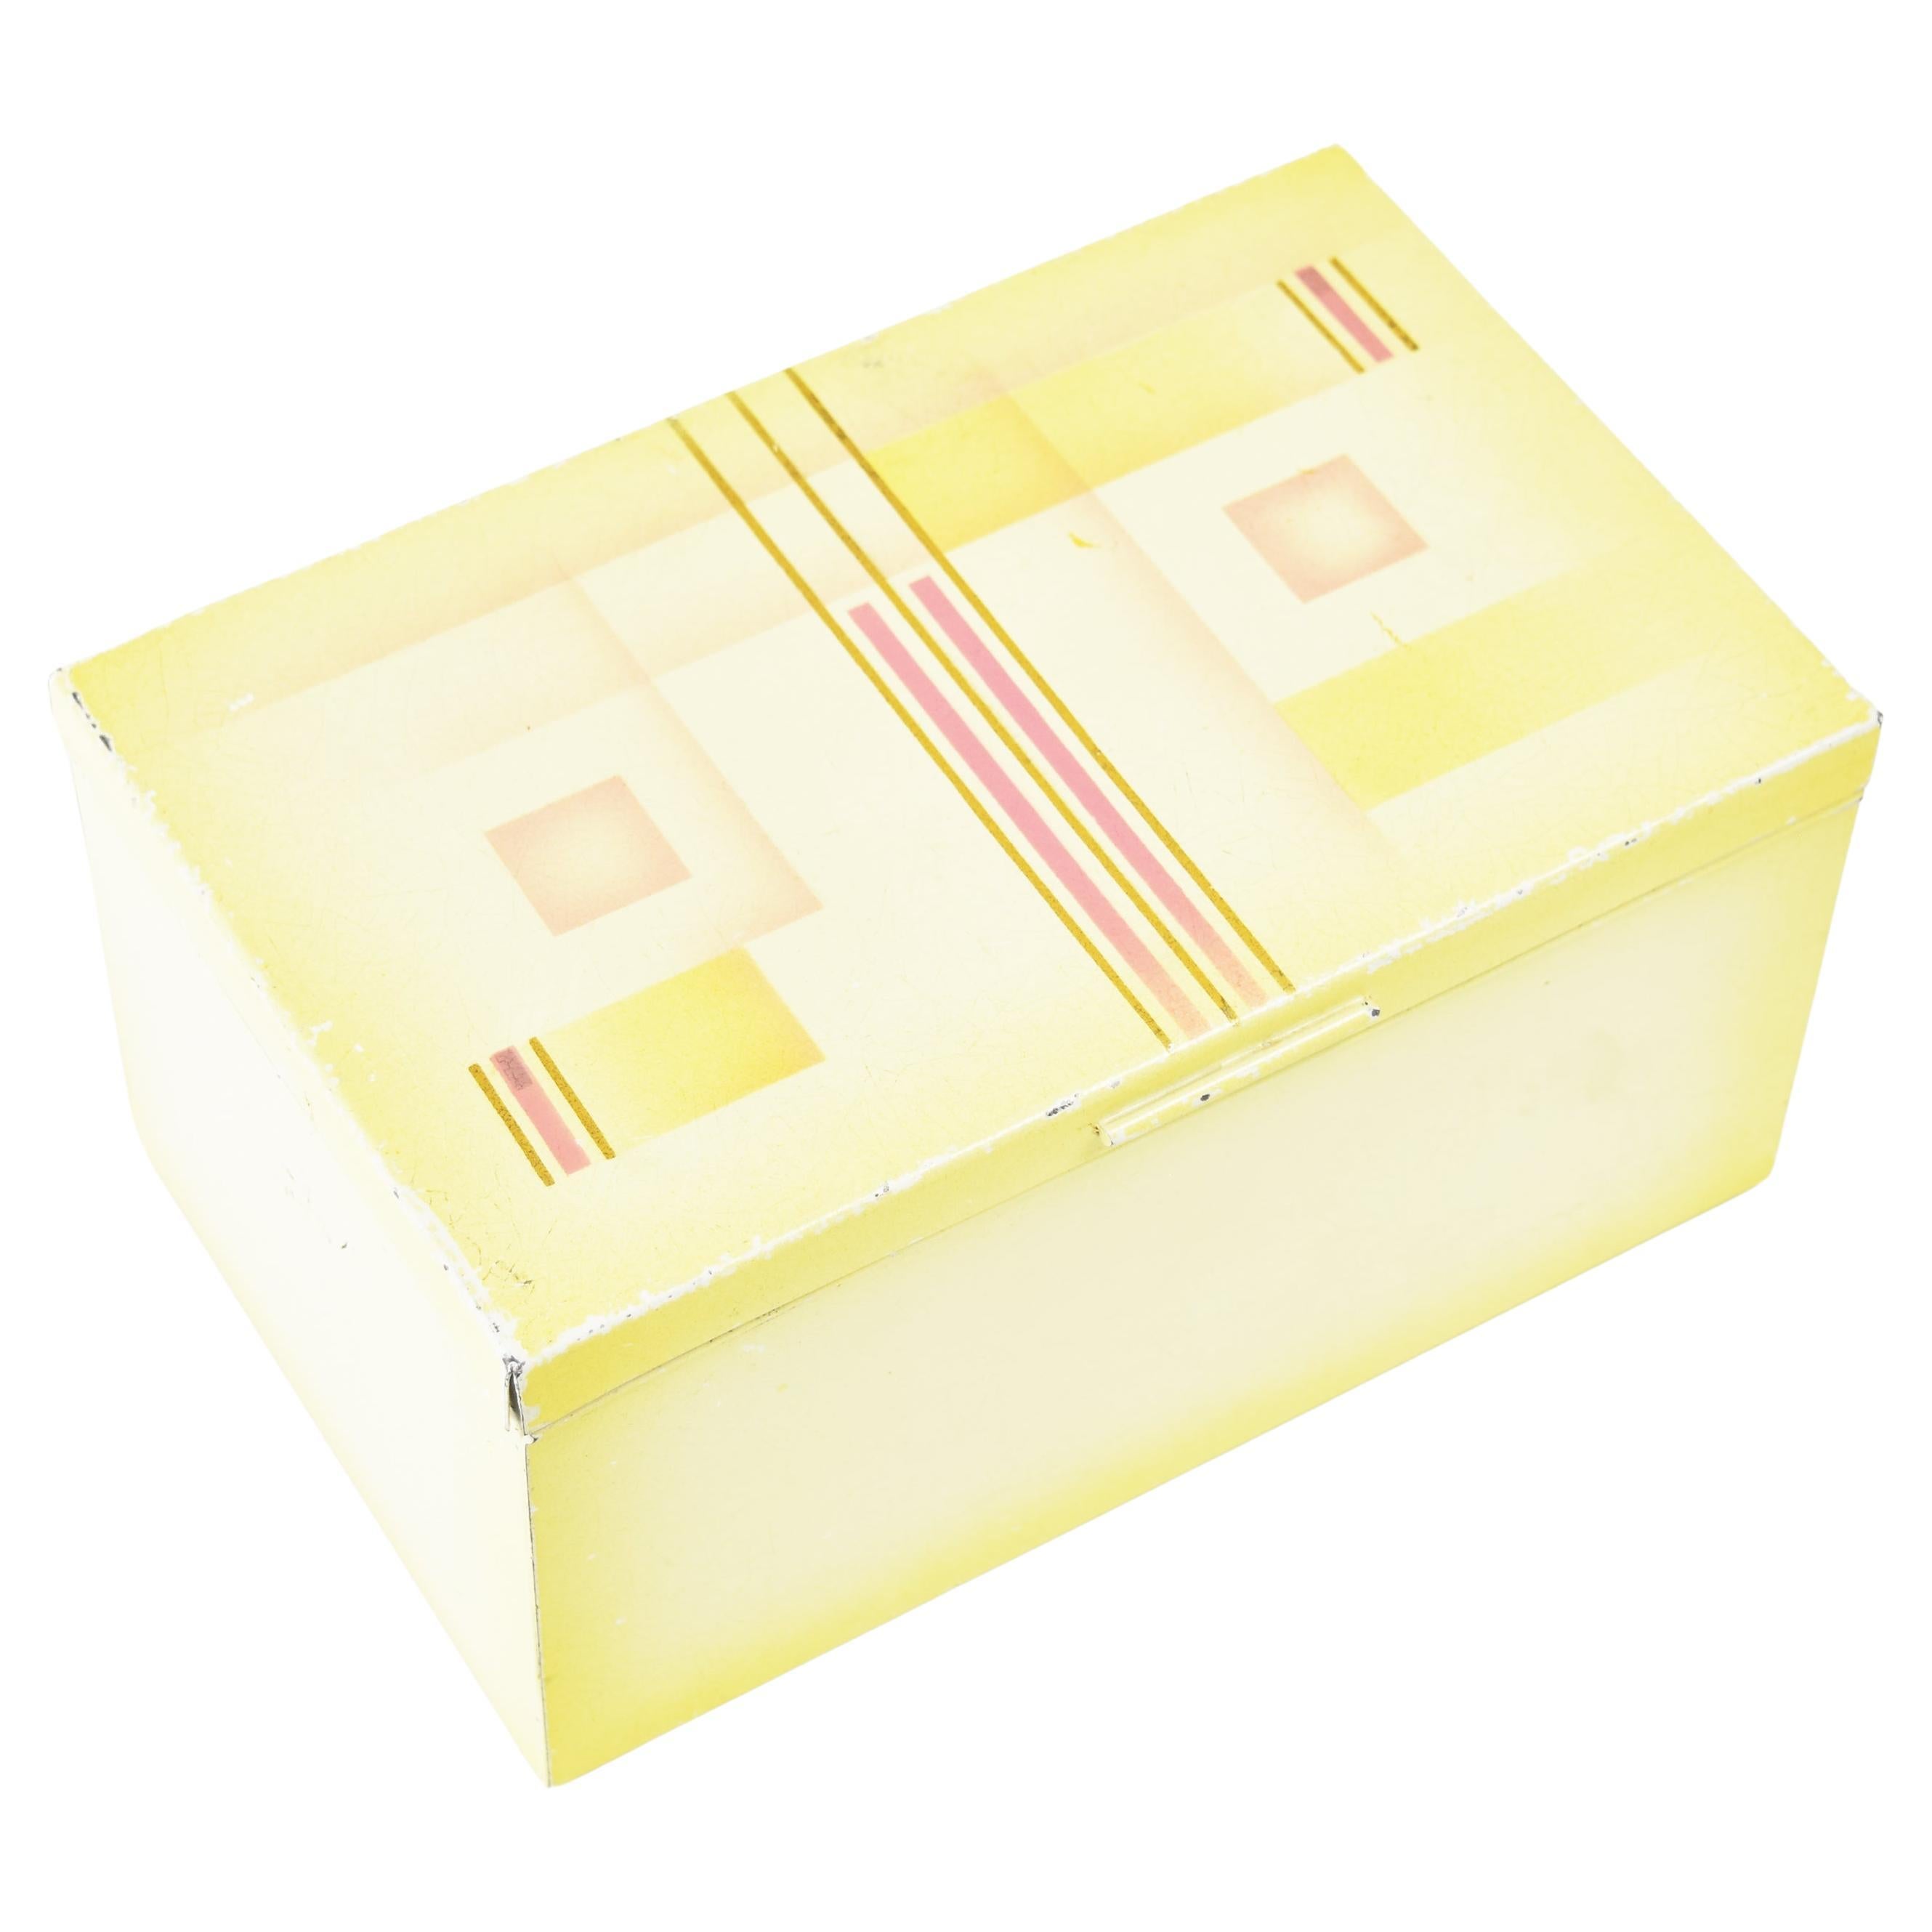 Art Deco Modernist Spritzdekor Metal Tin Box Container Marianne Brandt Bauhaus For Sale